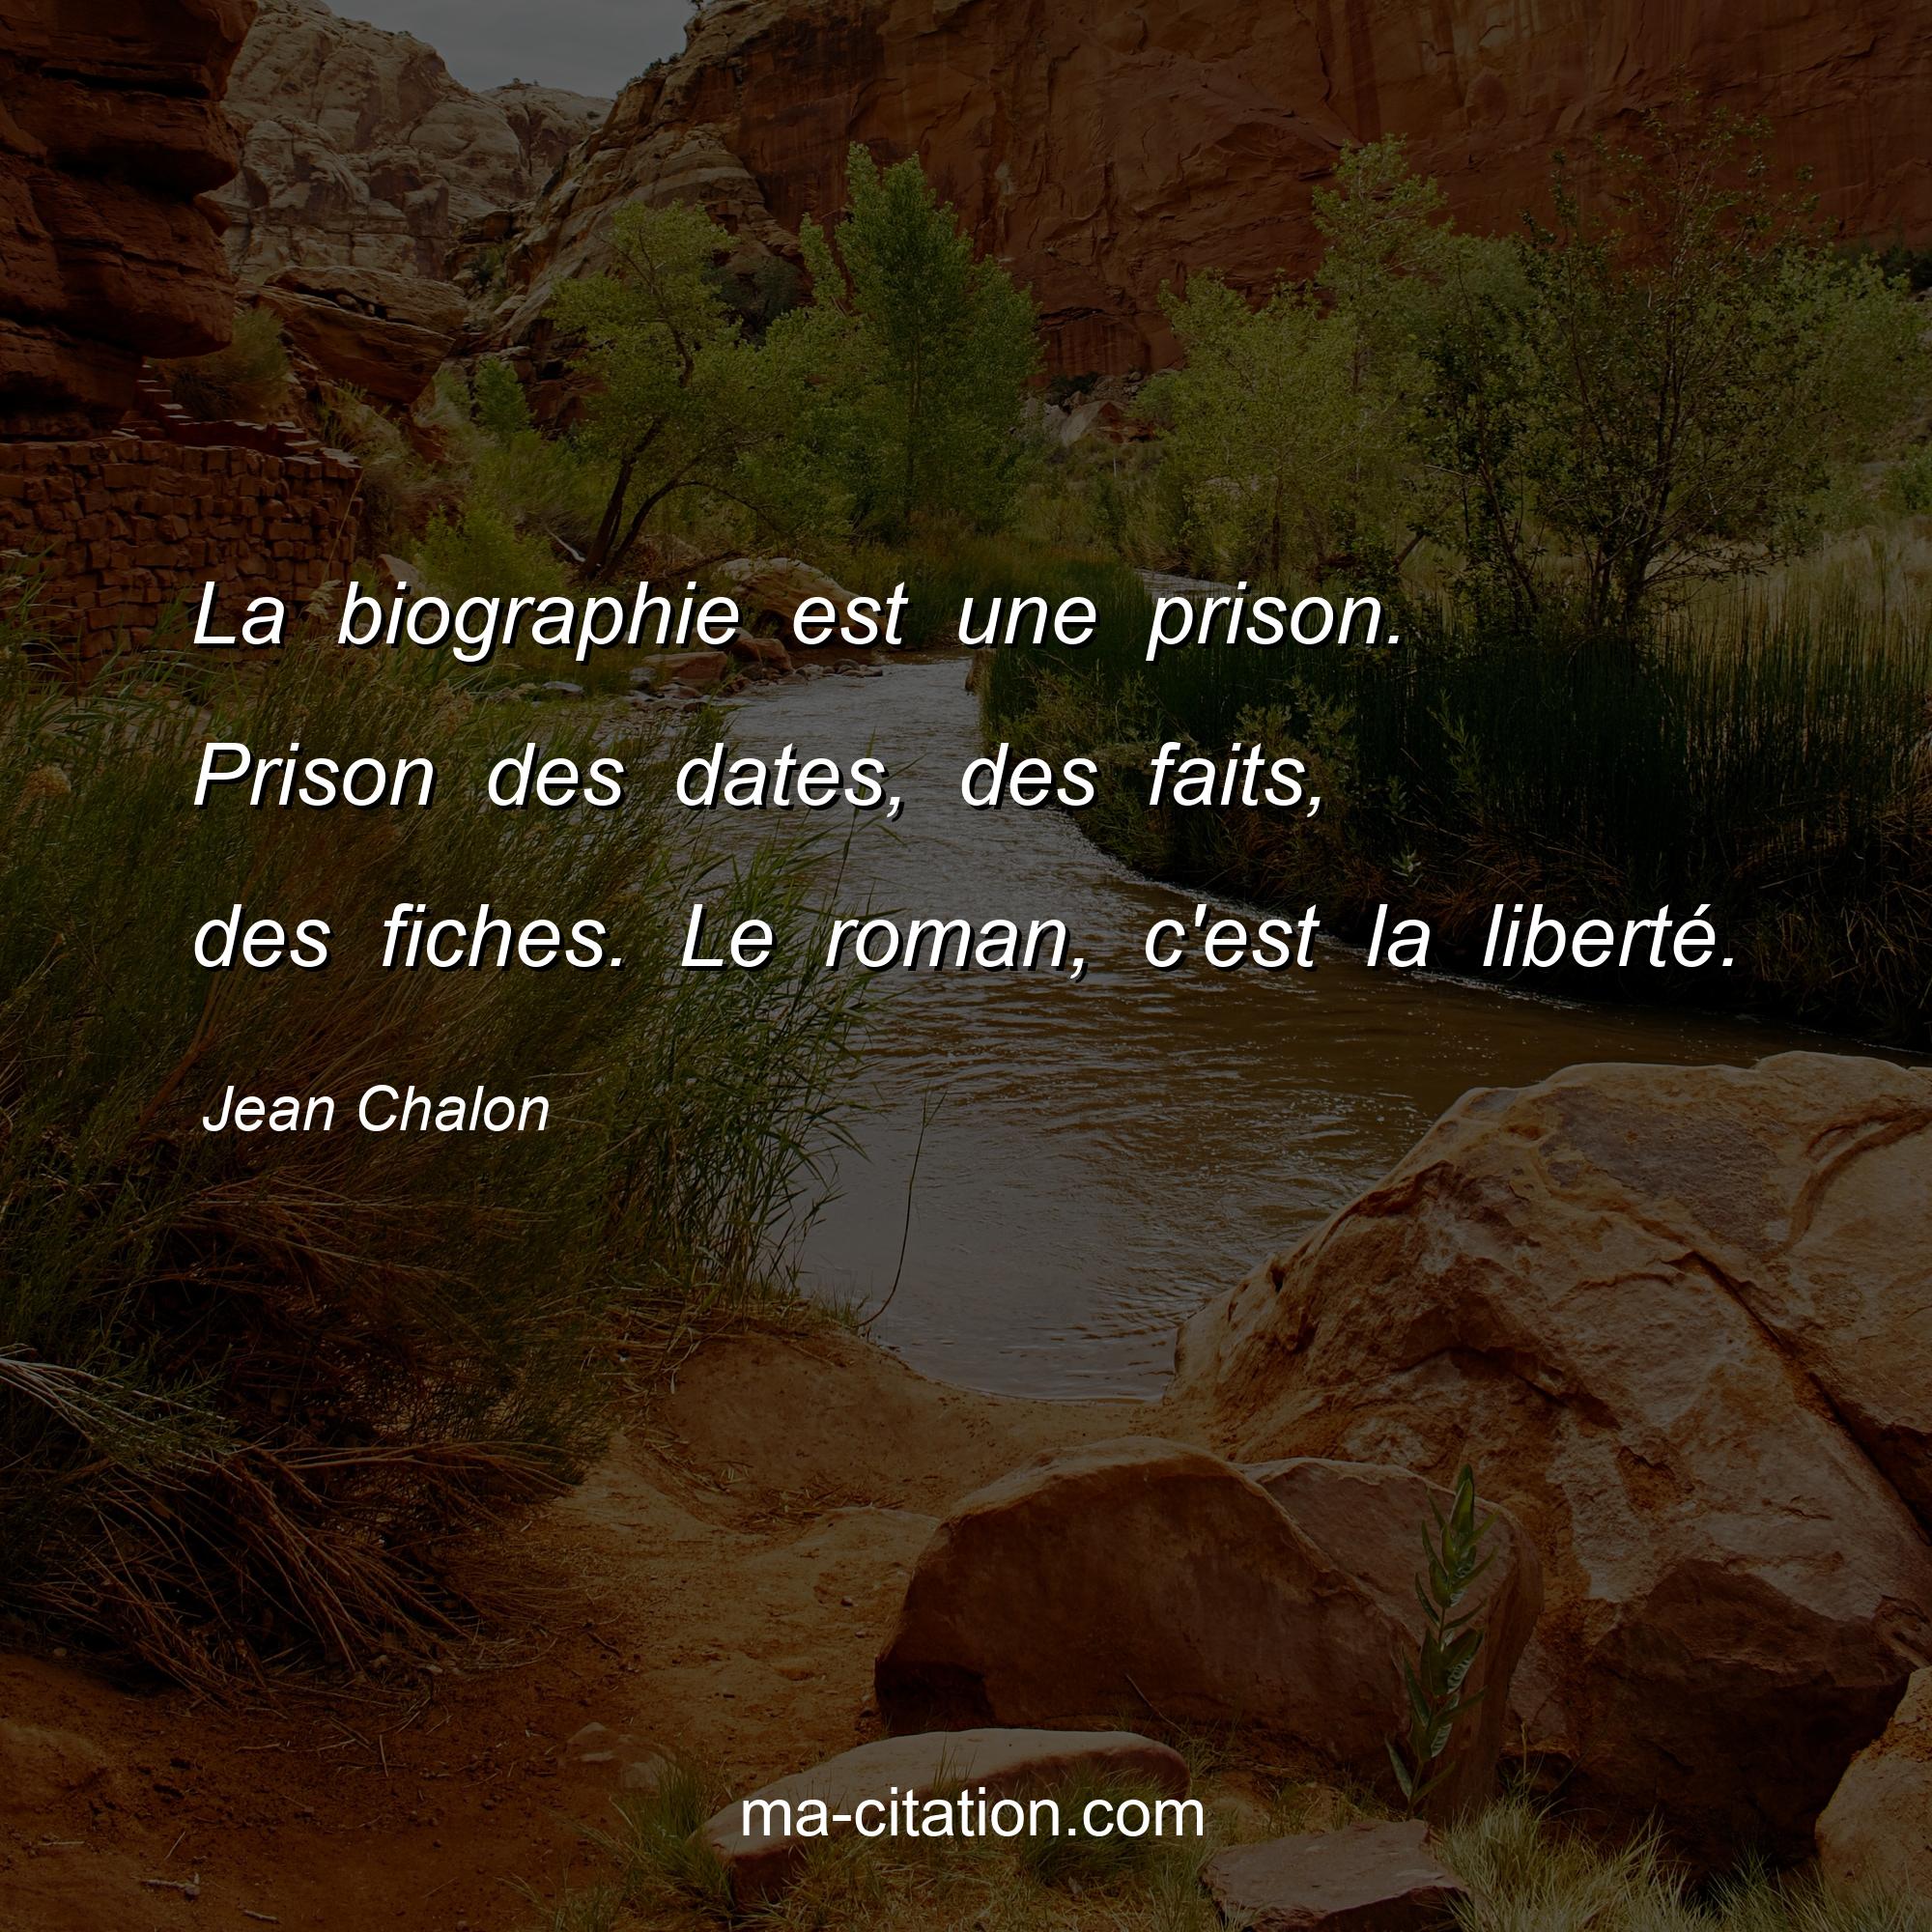 Jean Chalon : La biographie est une prison. Prison des dates, des faits, des fiches. Le roman, c'est la liberté.